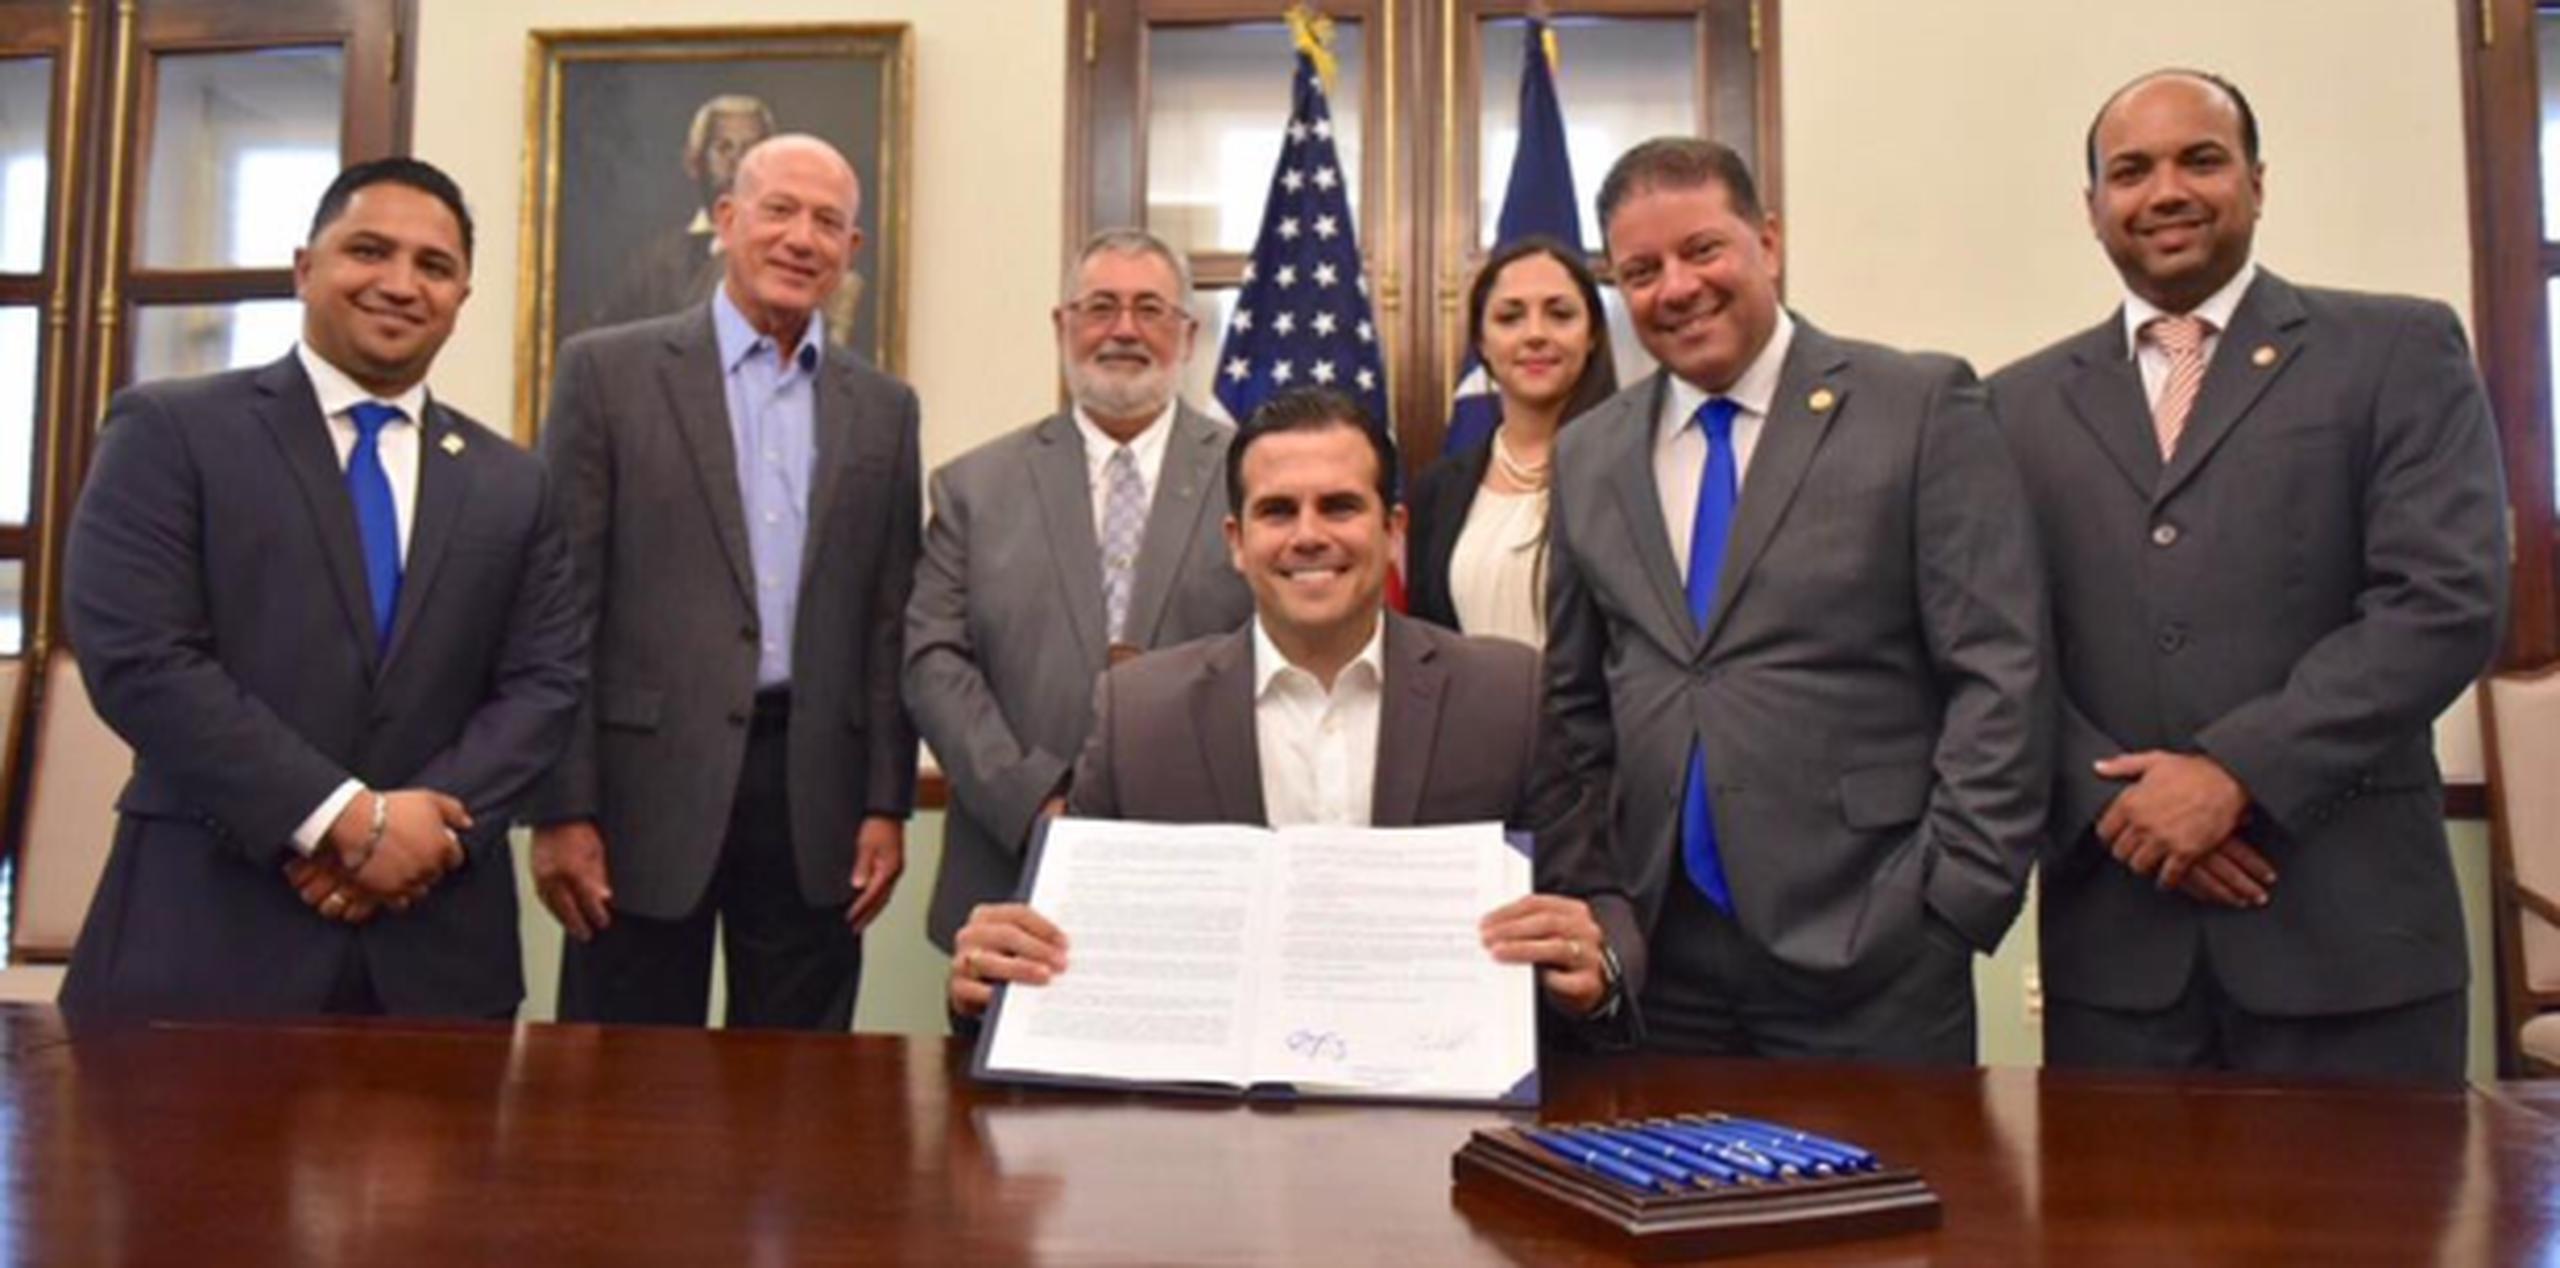 Al centro, el gobernador Ricardo Rosselló, junto a senadores y titulares de agencias, durante la firma del Proyecto del Senado 81. (Suministrada)